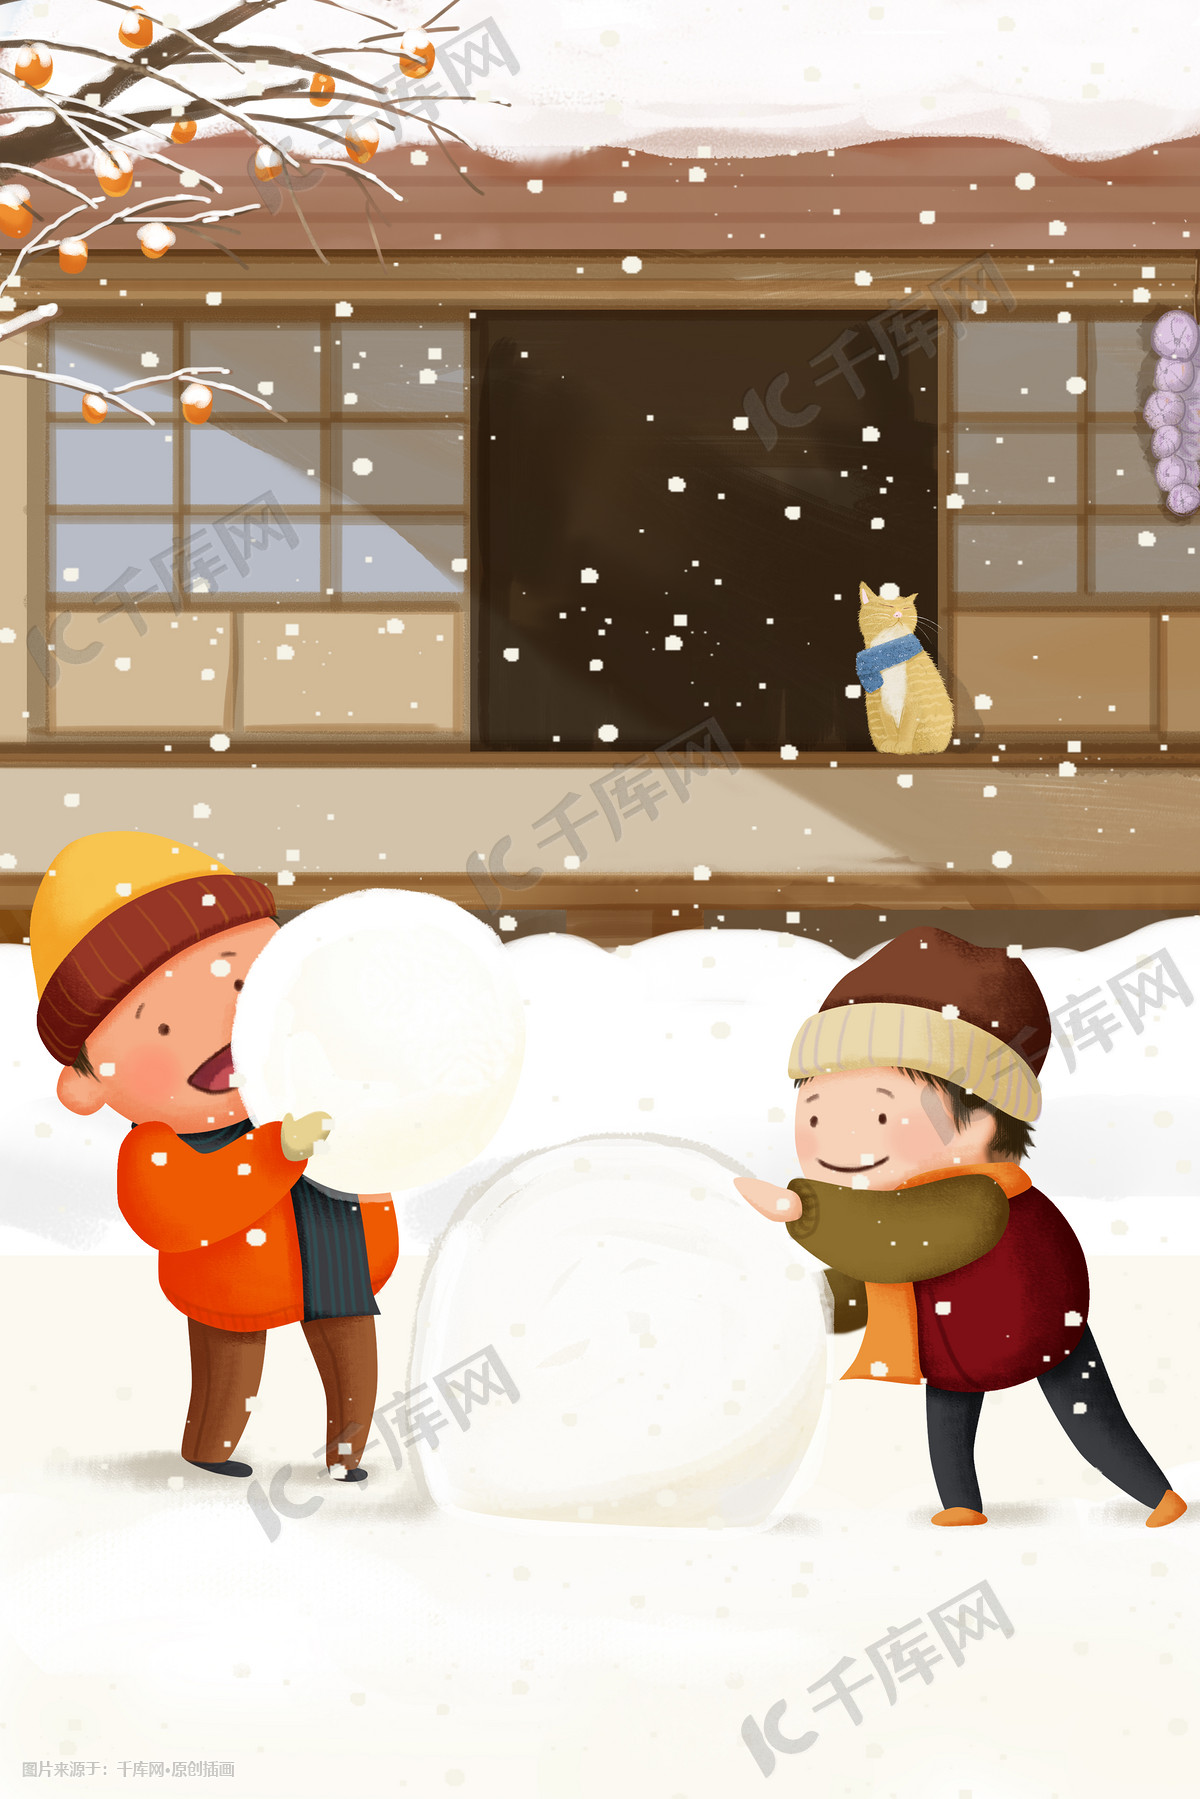 雪人头像 - 堆糖，美图壁纸兴趣社区